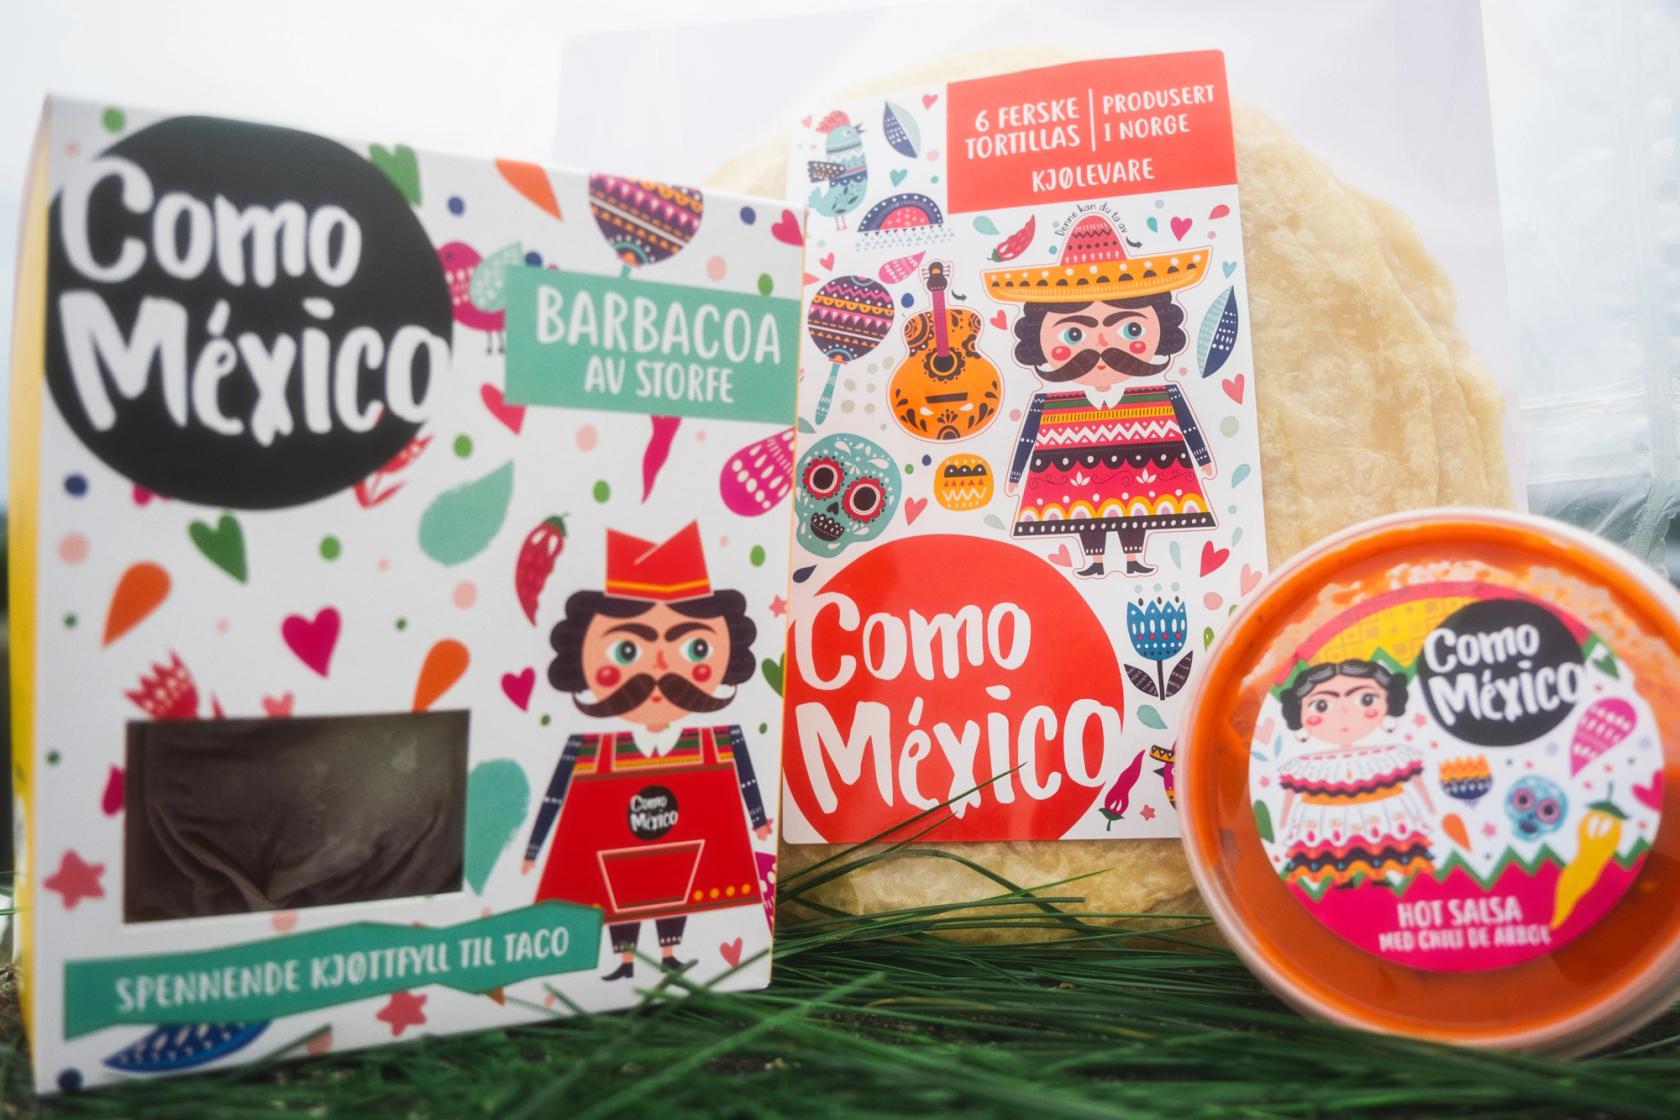 Como Mexico er et eventyr av ærlig mat basert på lokale råvarer og meksikanske oppskrifter.